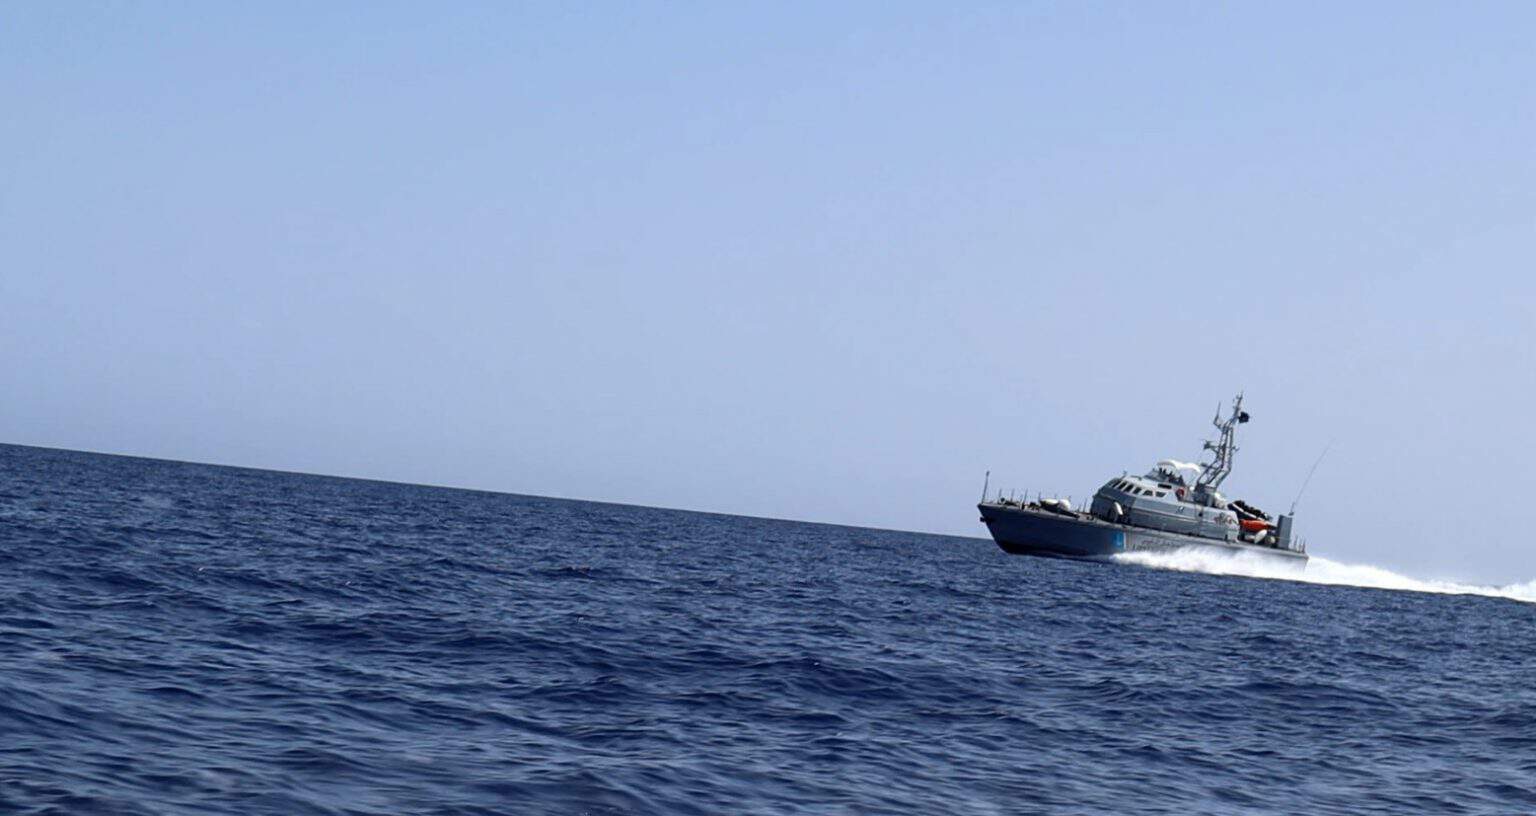 SOS MEDITERRANEE e la FICR invitano i governi a garantire che si possa fornire assistenza in mare senza rischiare la vita